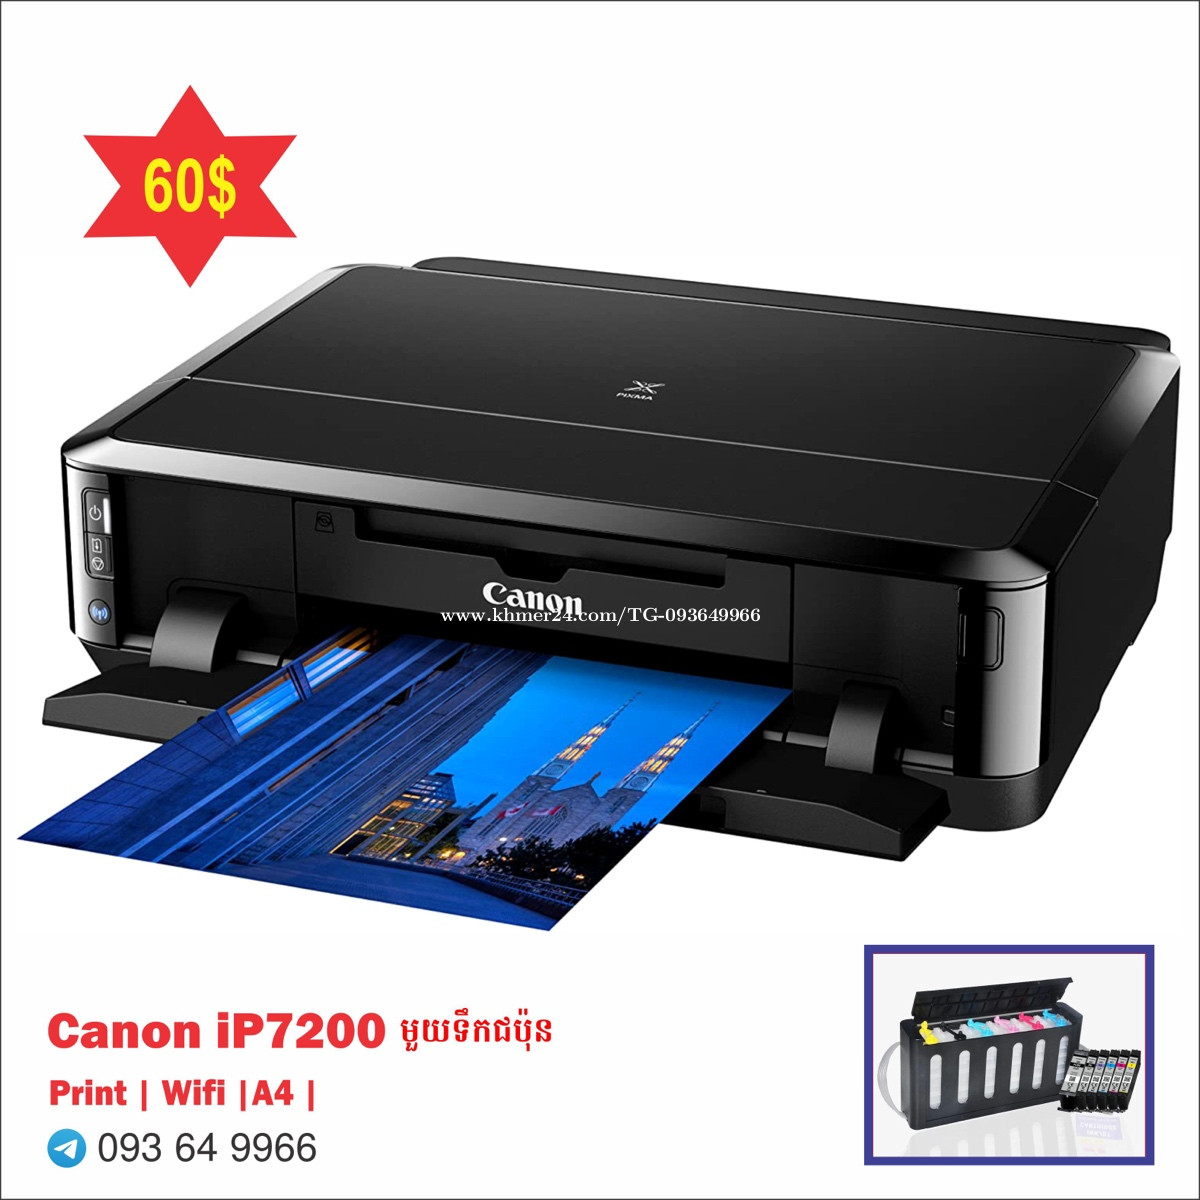 Canon ts5030s Price $95.00 in Phnom Penh, Cambodia - TG printer